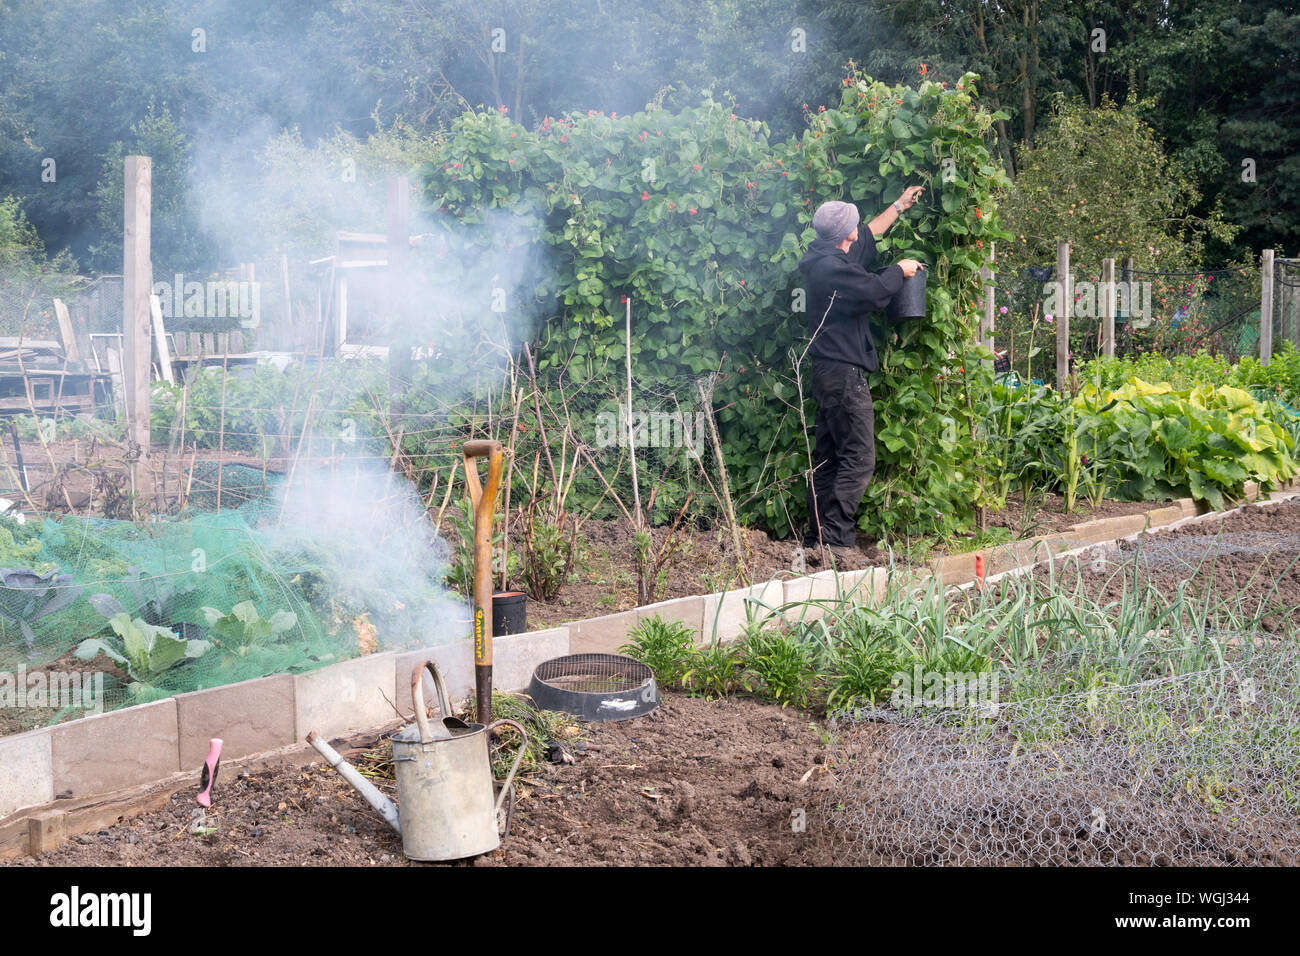 Ältere Mann picking runner Bohnen auf eine Zuteilung während Rauch driftet gegenüber von einem Garten Feuer, England, Großbritannien Stockfoto